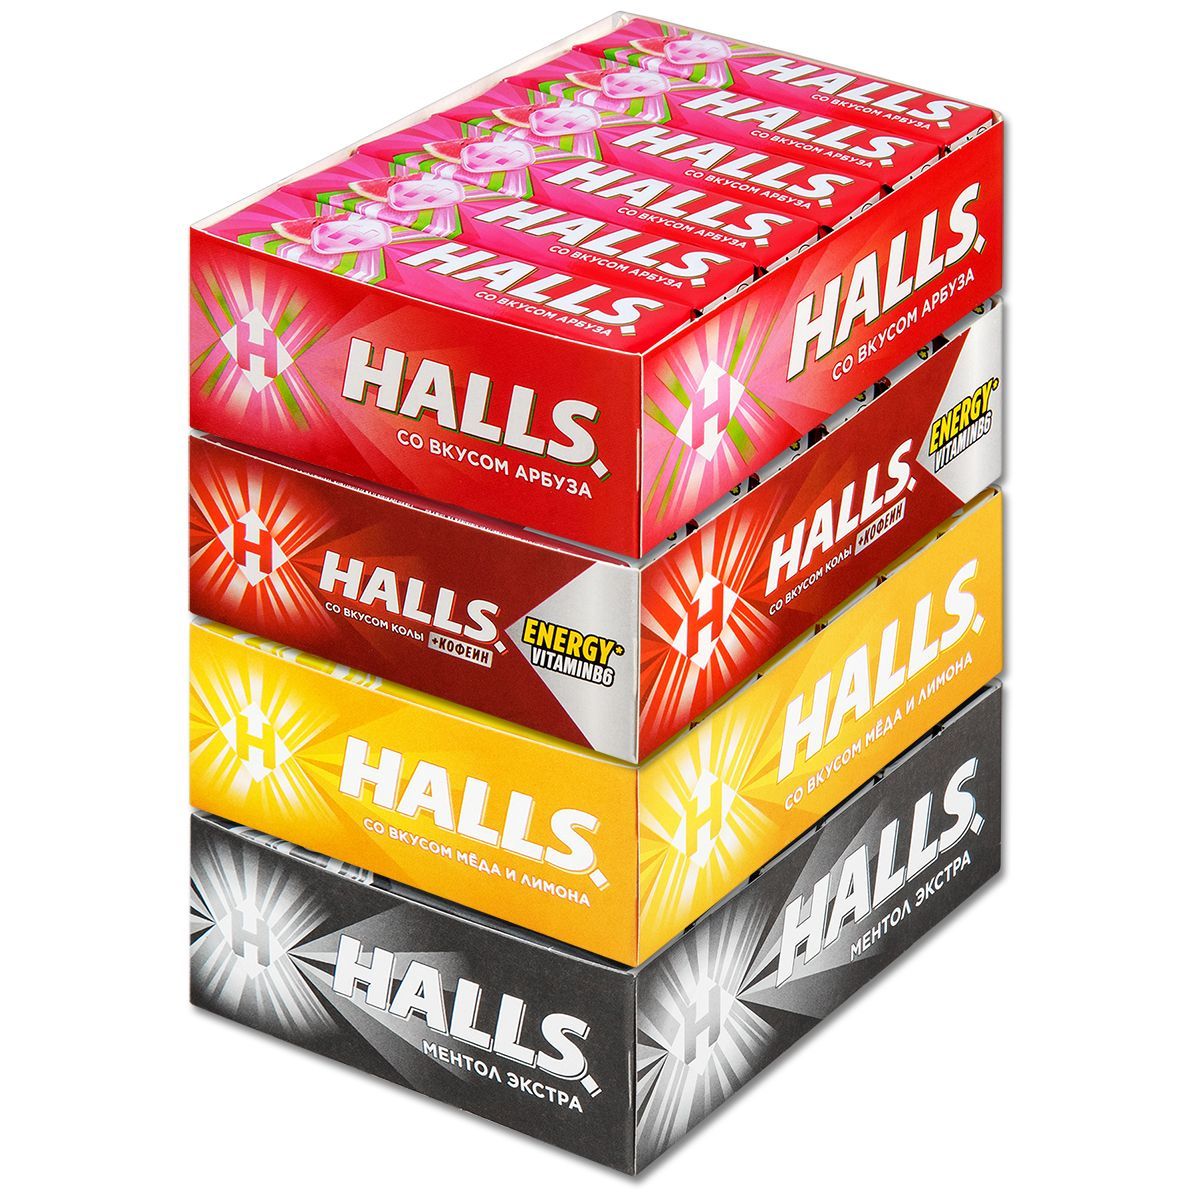 Halls конфеты. Упаковки конфет Halls. Холс отзывы. Halls карамель col ассорти. Конфеты halls